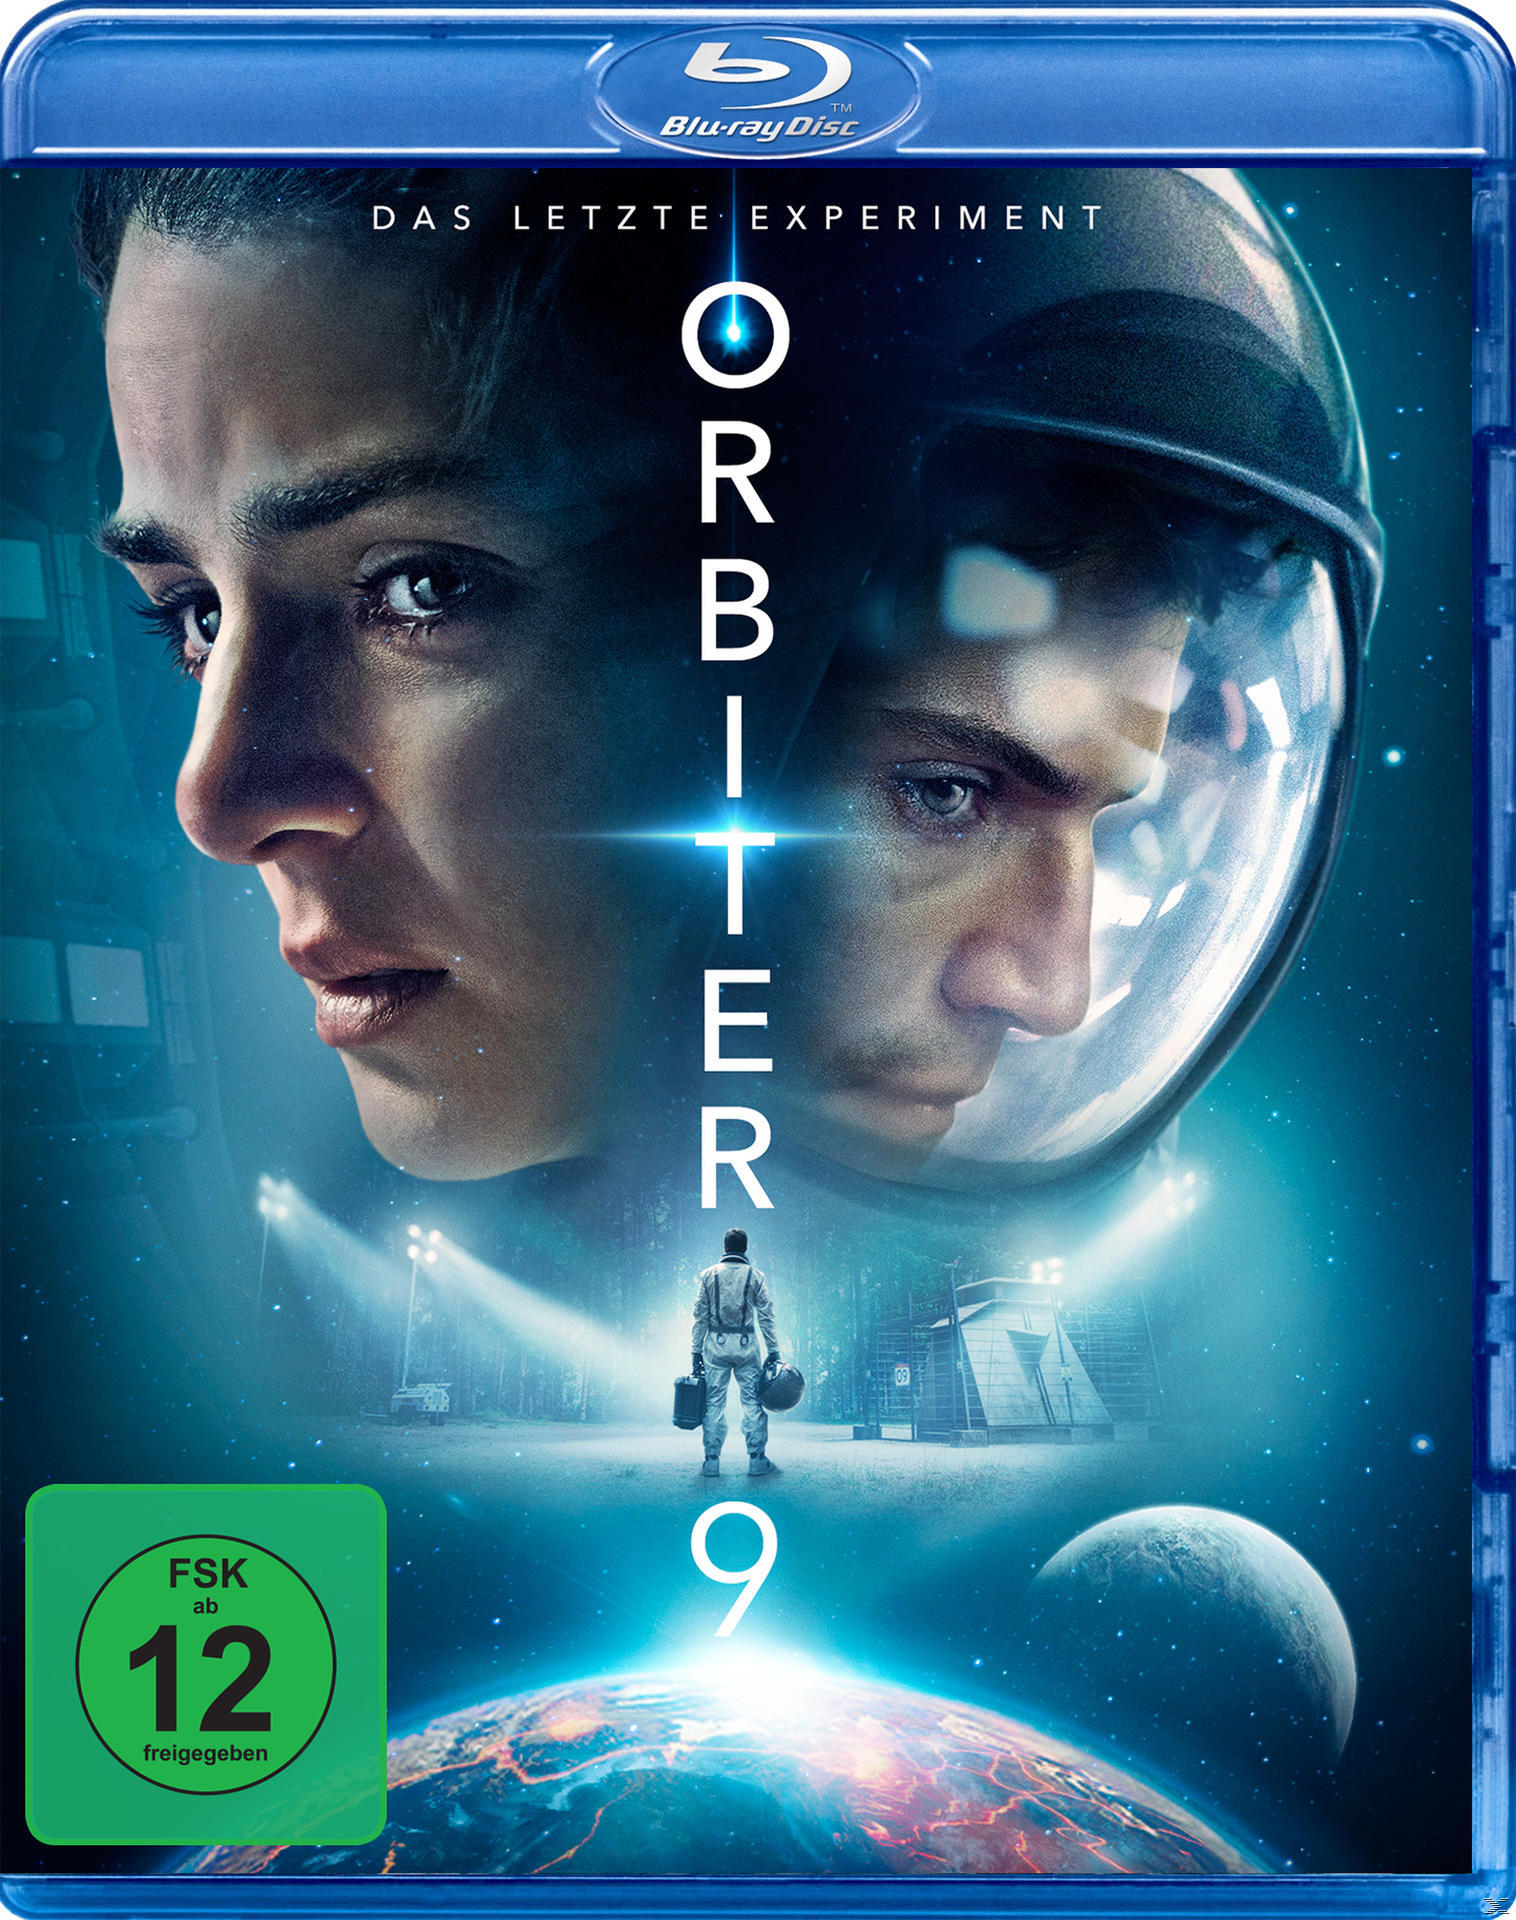 Orbiter 9 - Blu-ray Experiment Das letzte